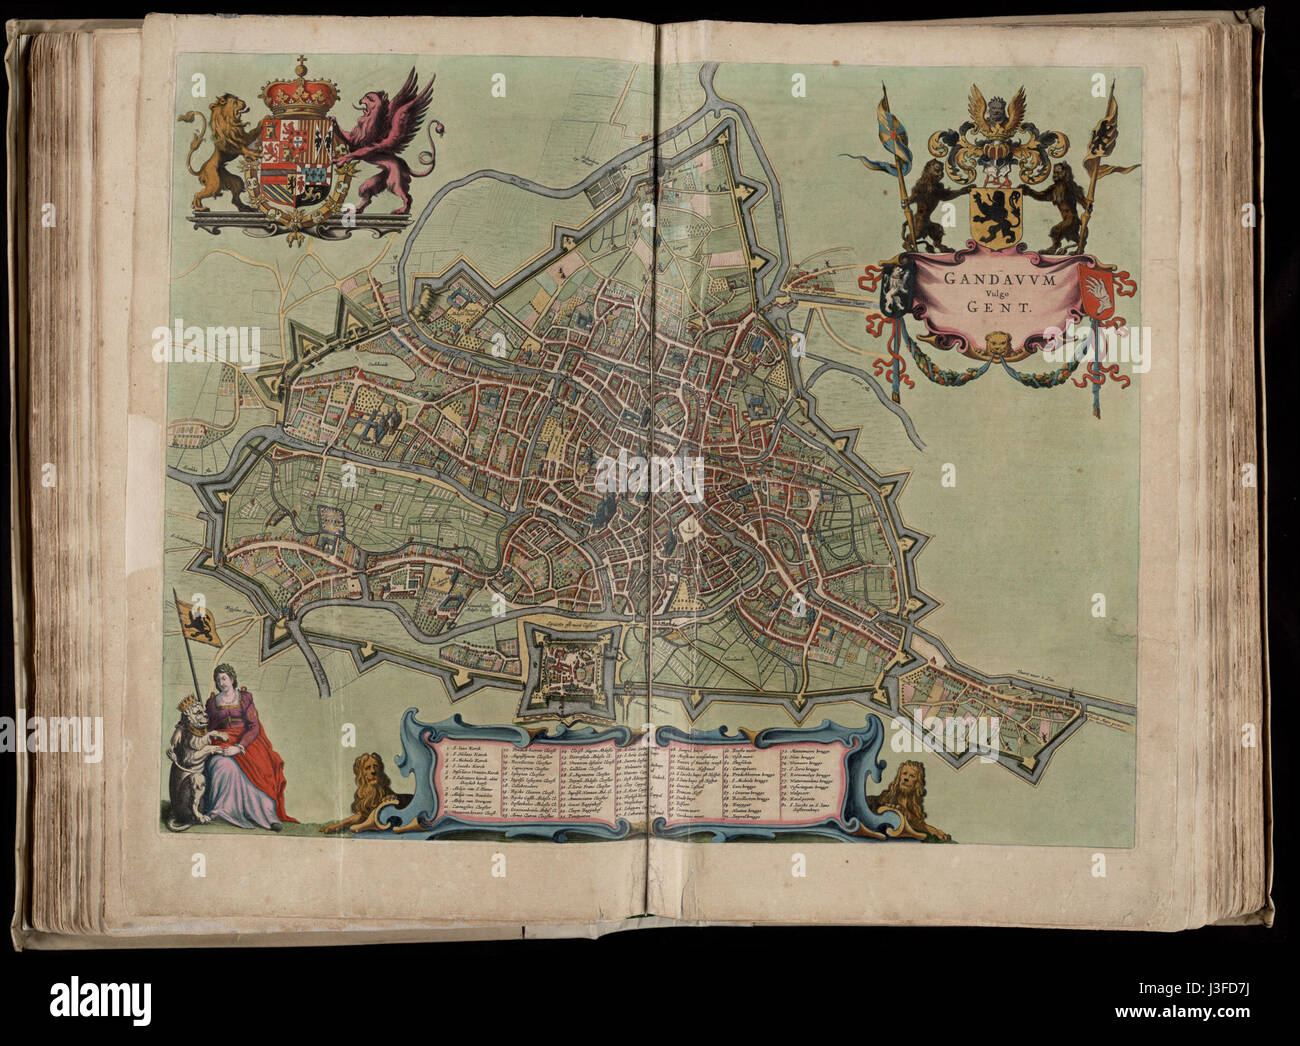 Flandria illustrata; mapa de Gante Foto de stock